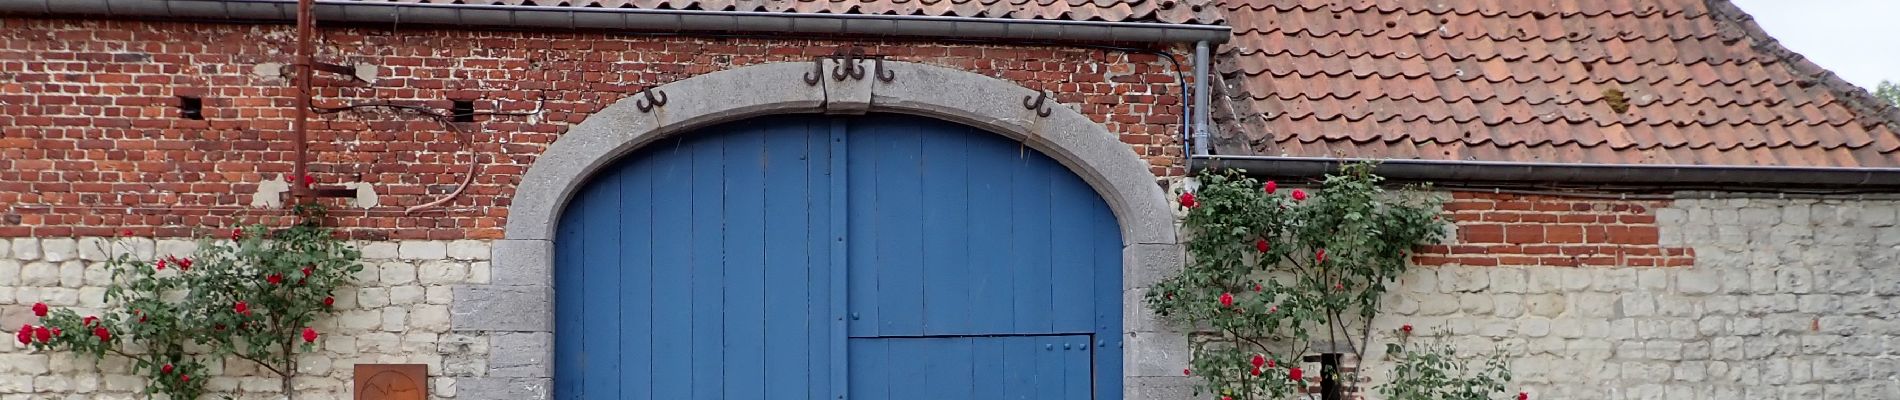 POI Genappe - Porte cochère de la Ferme de la Basse-Cour du Château - Photo